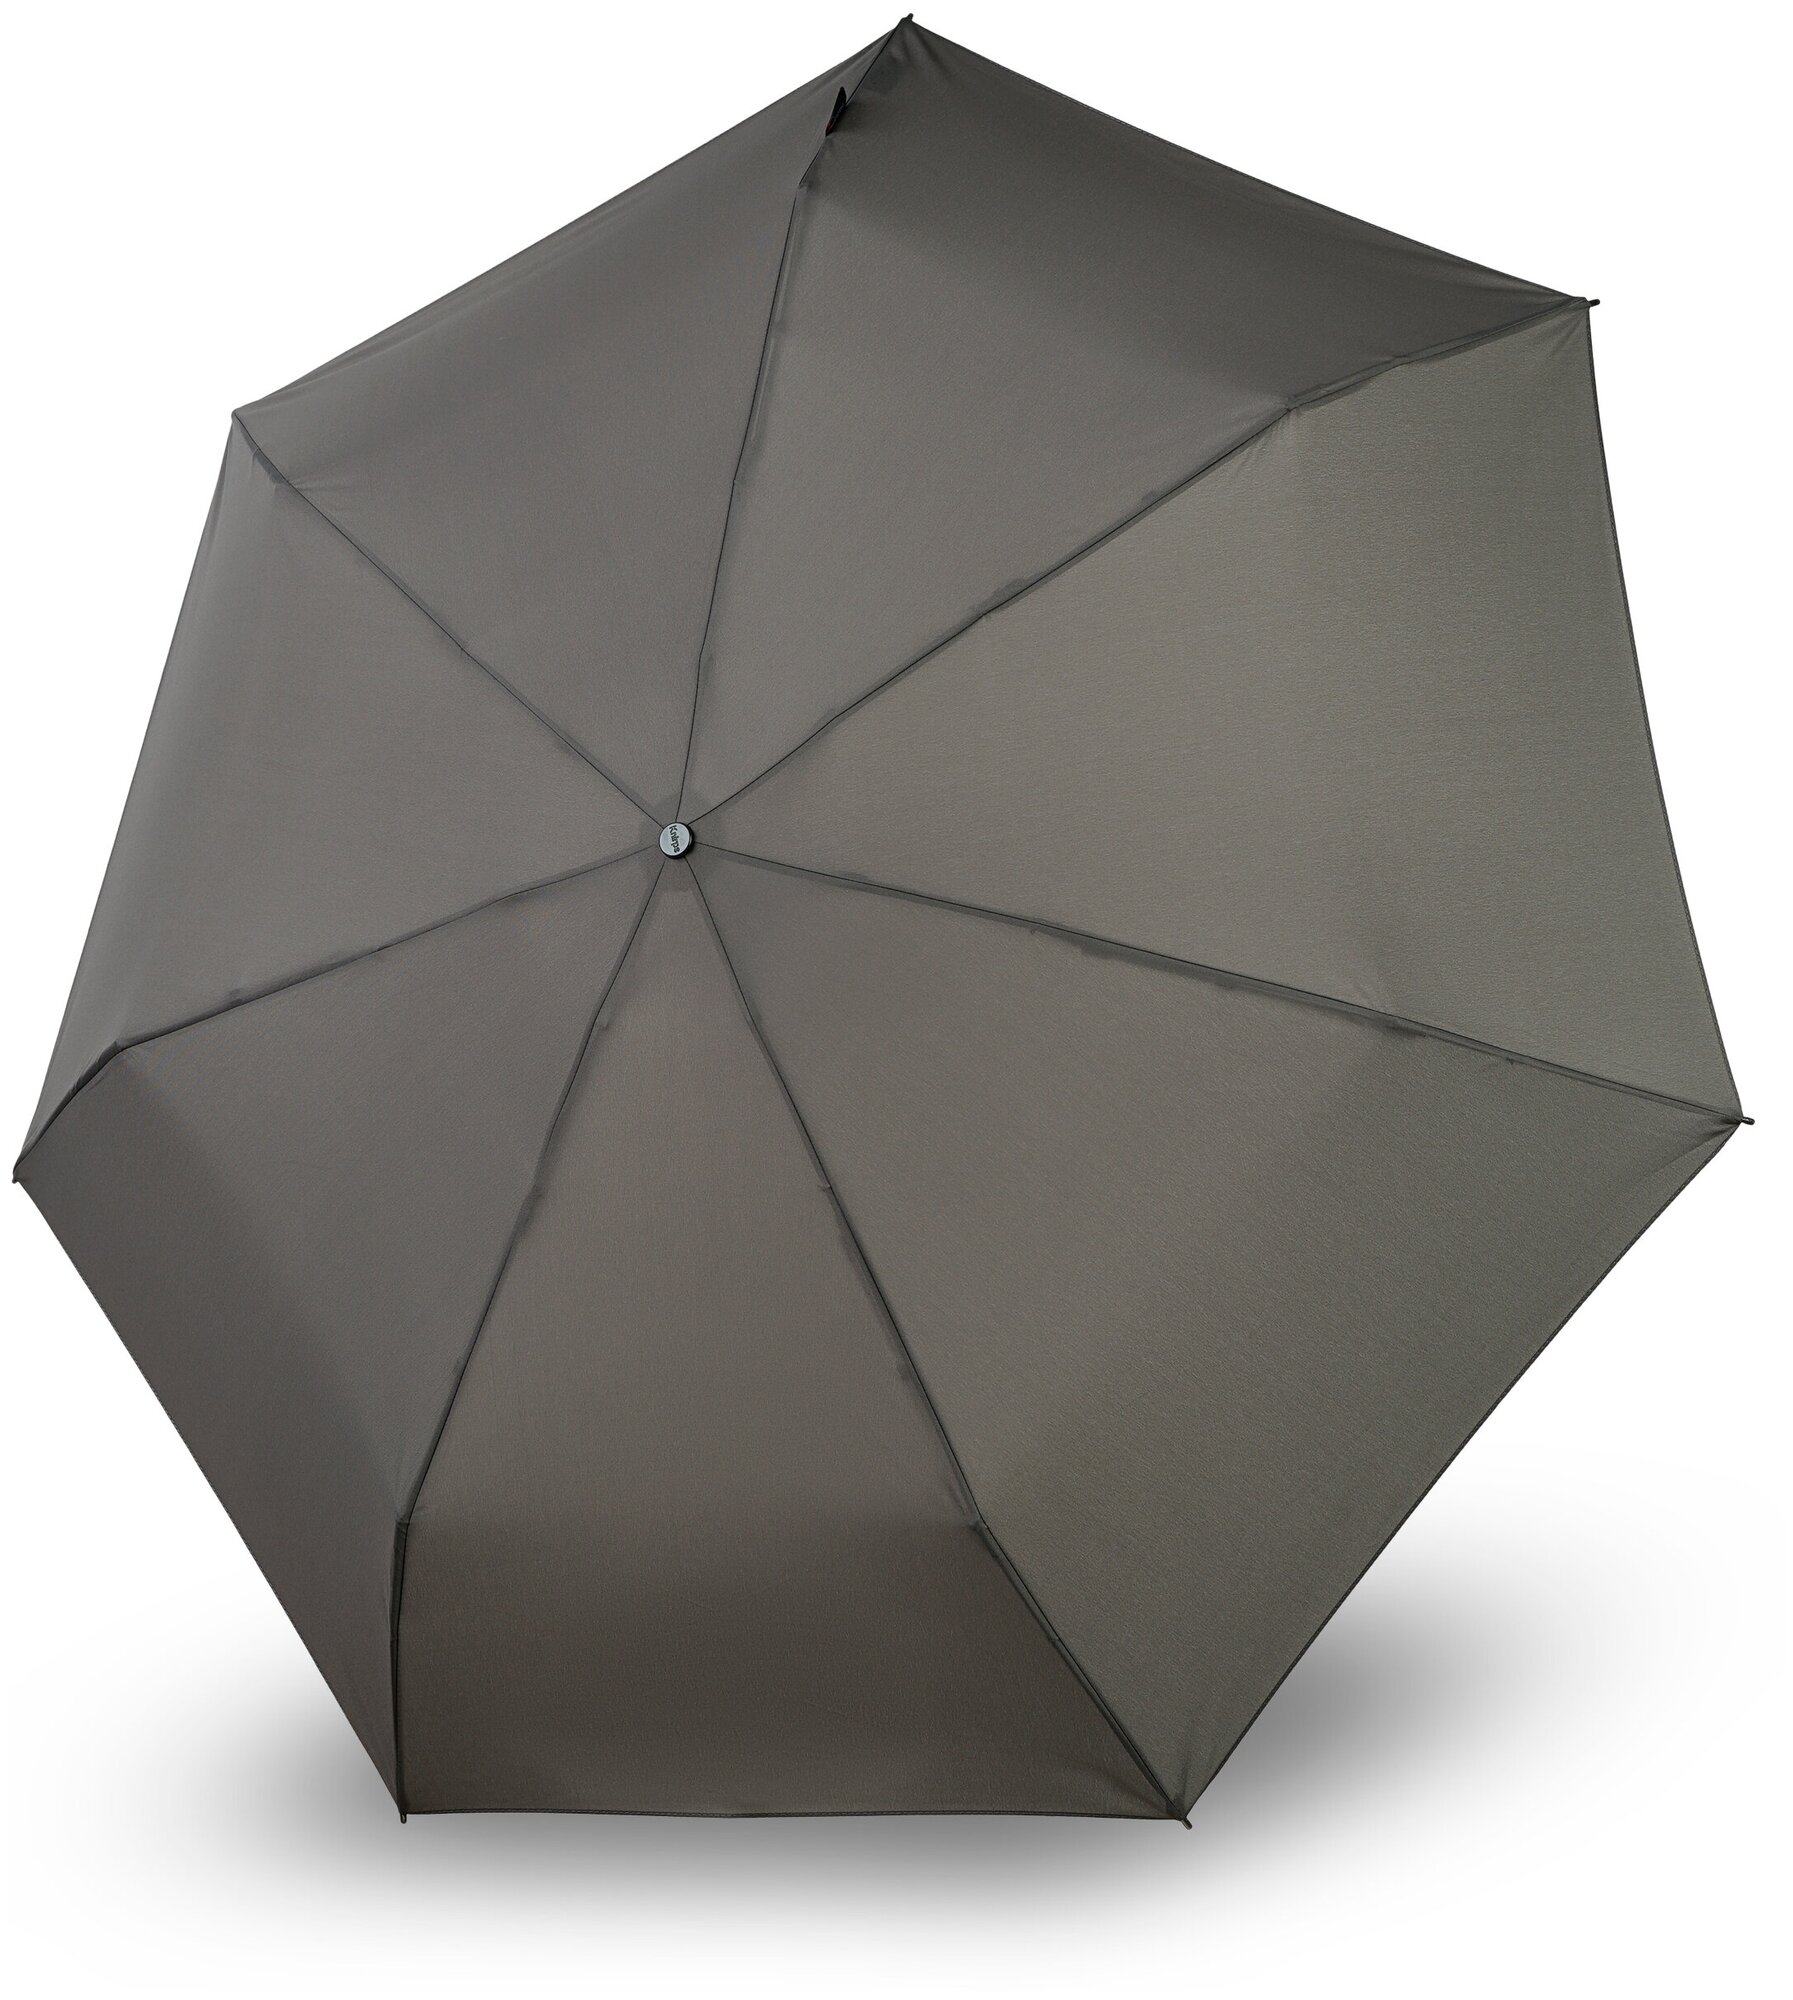 Мини зонт механический, Knirps T.020, складной, легкий 245 г, купол 90 см, антиветер